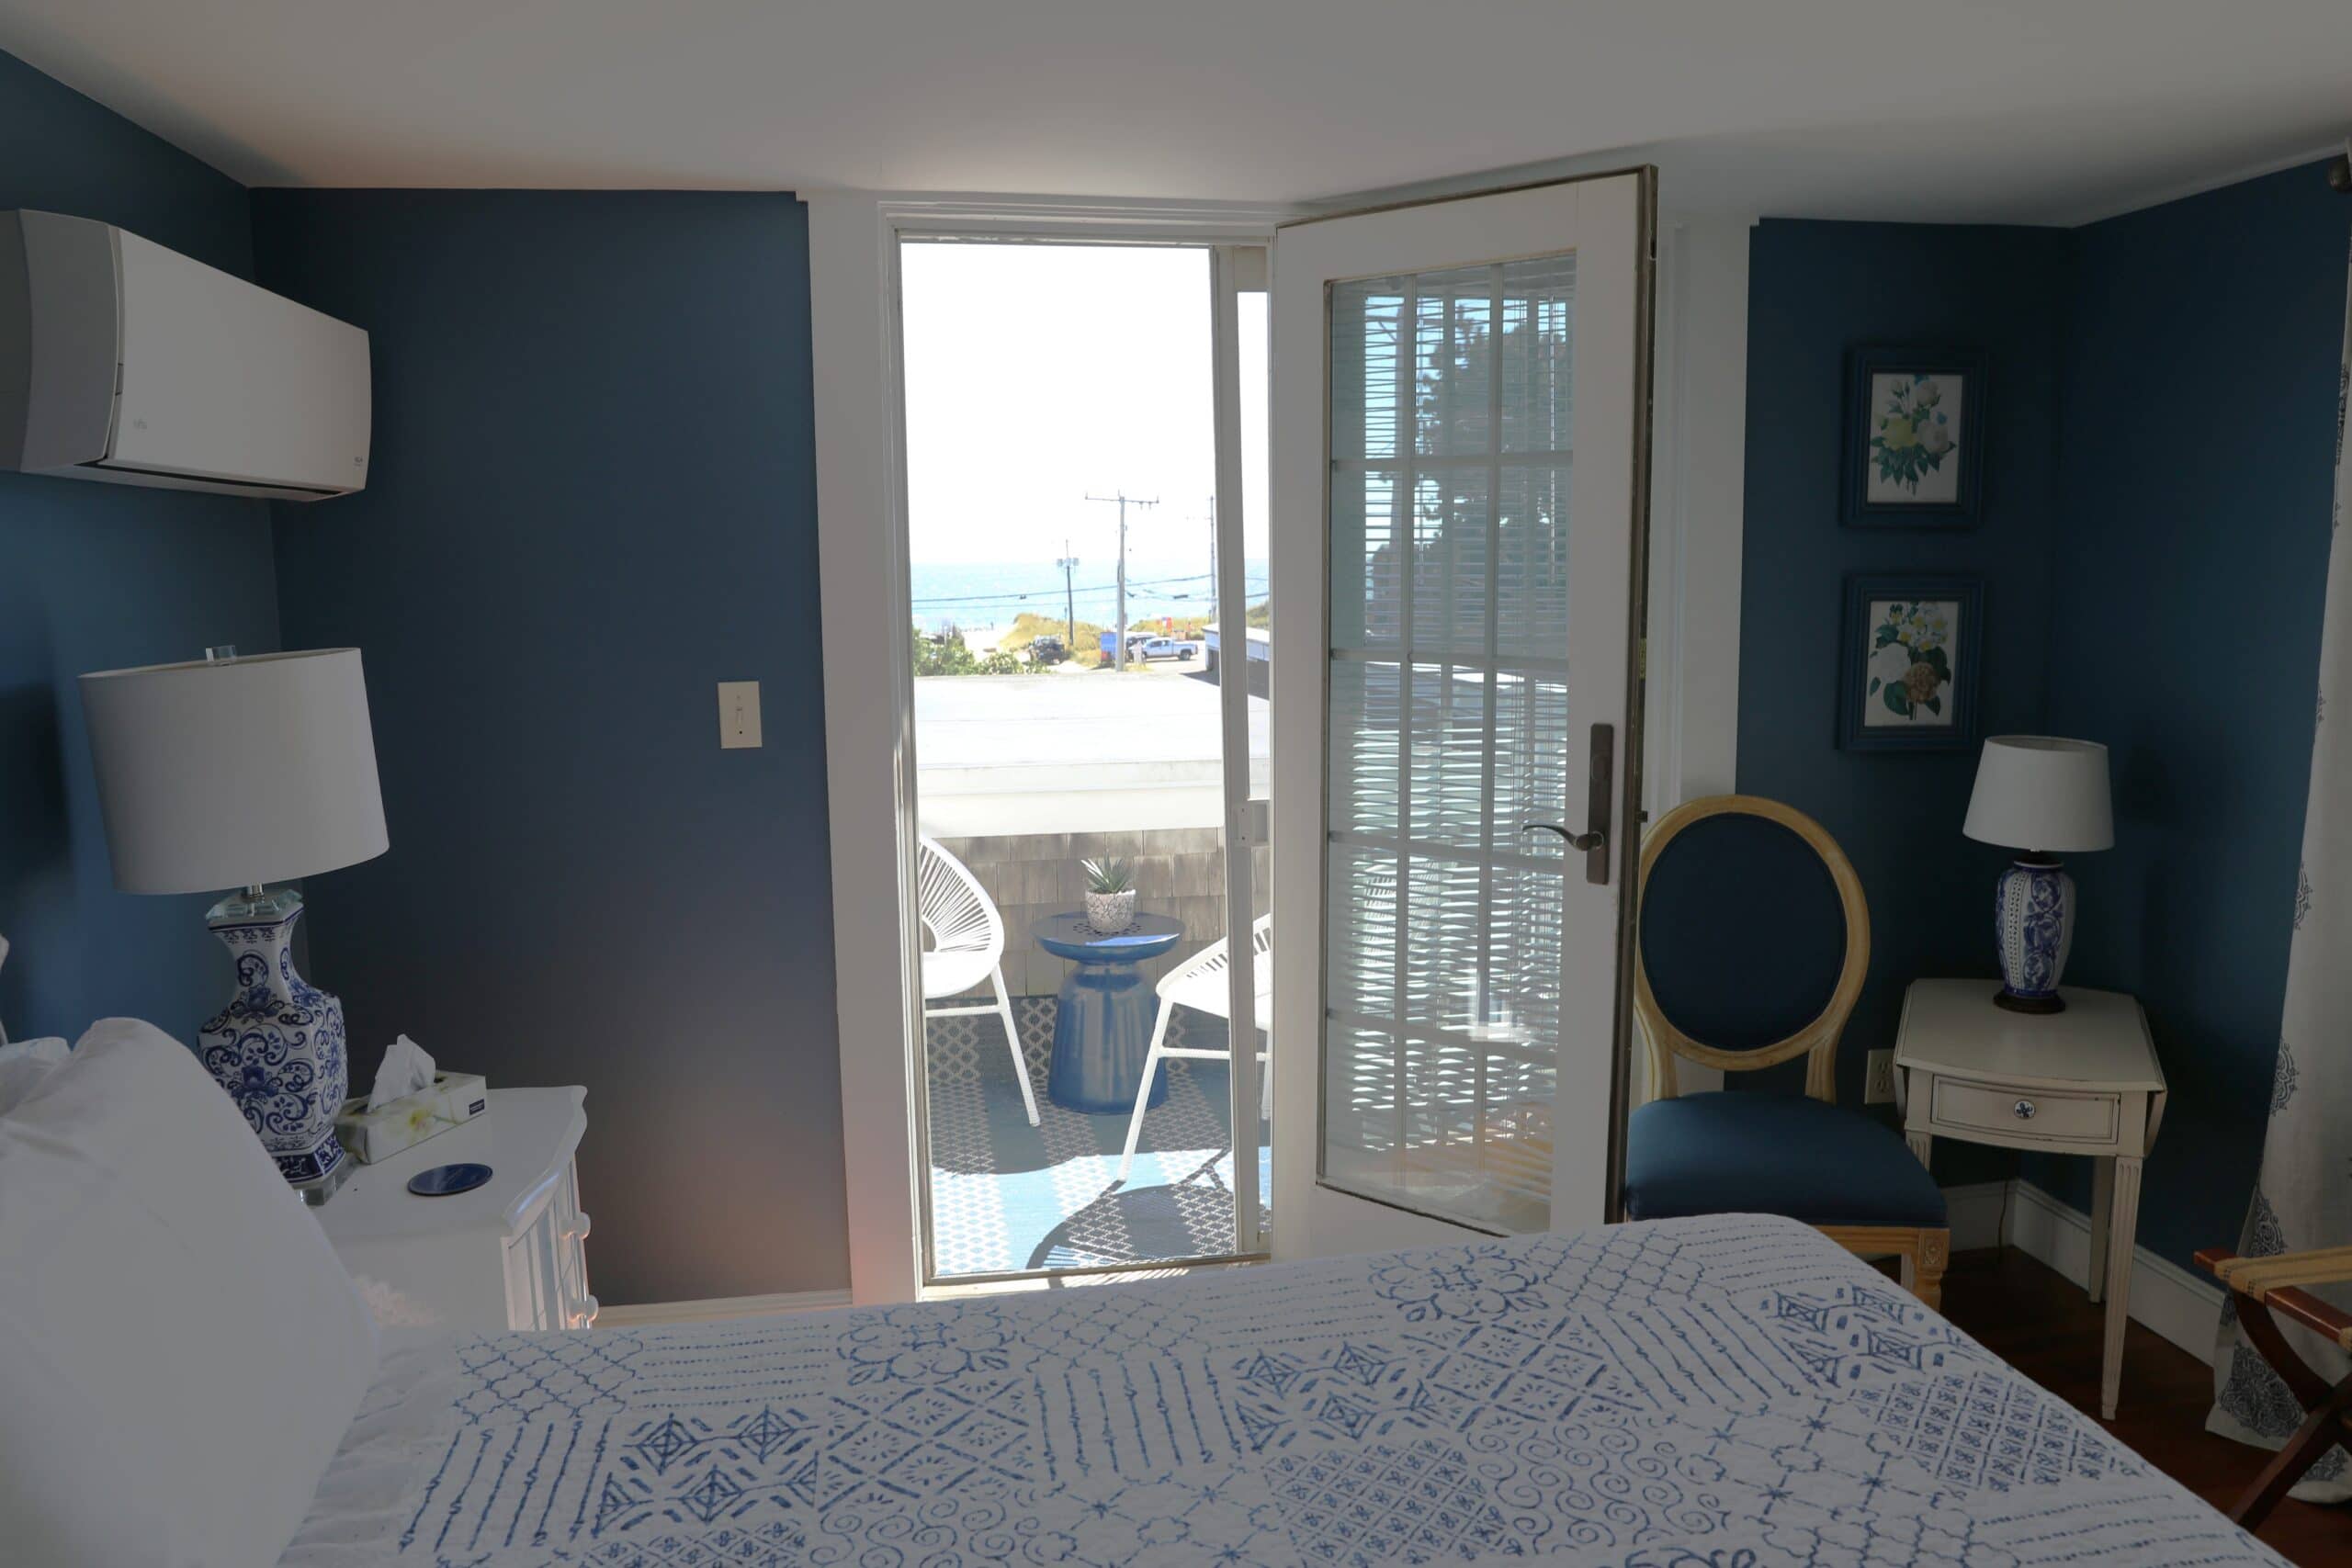 Queen Room with Balcony & Ocean Views, Room #202